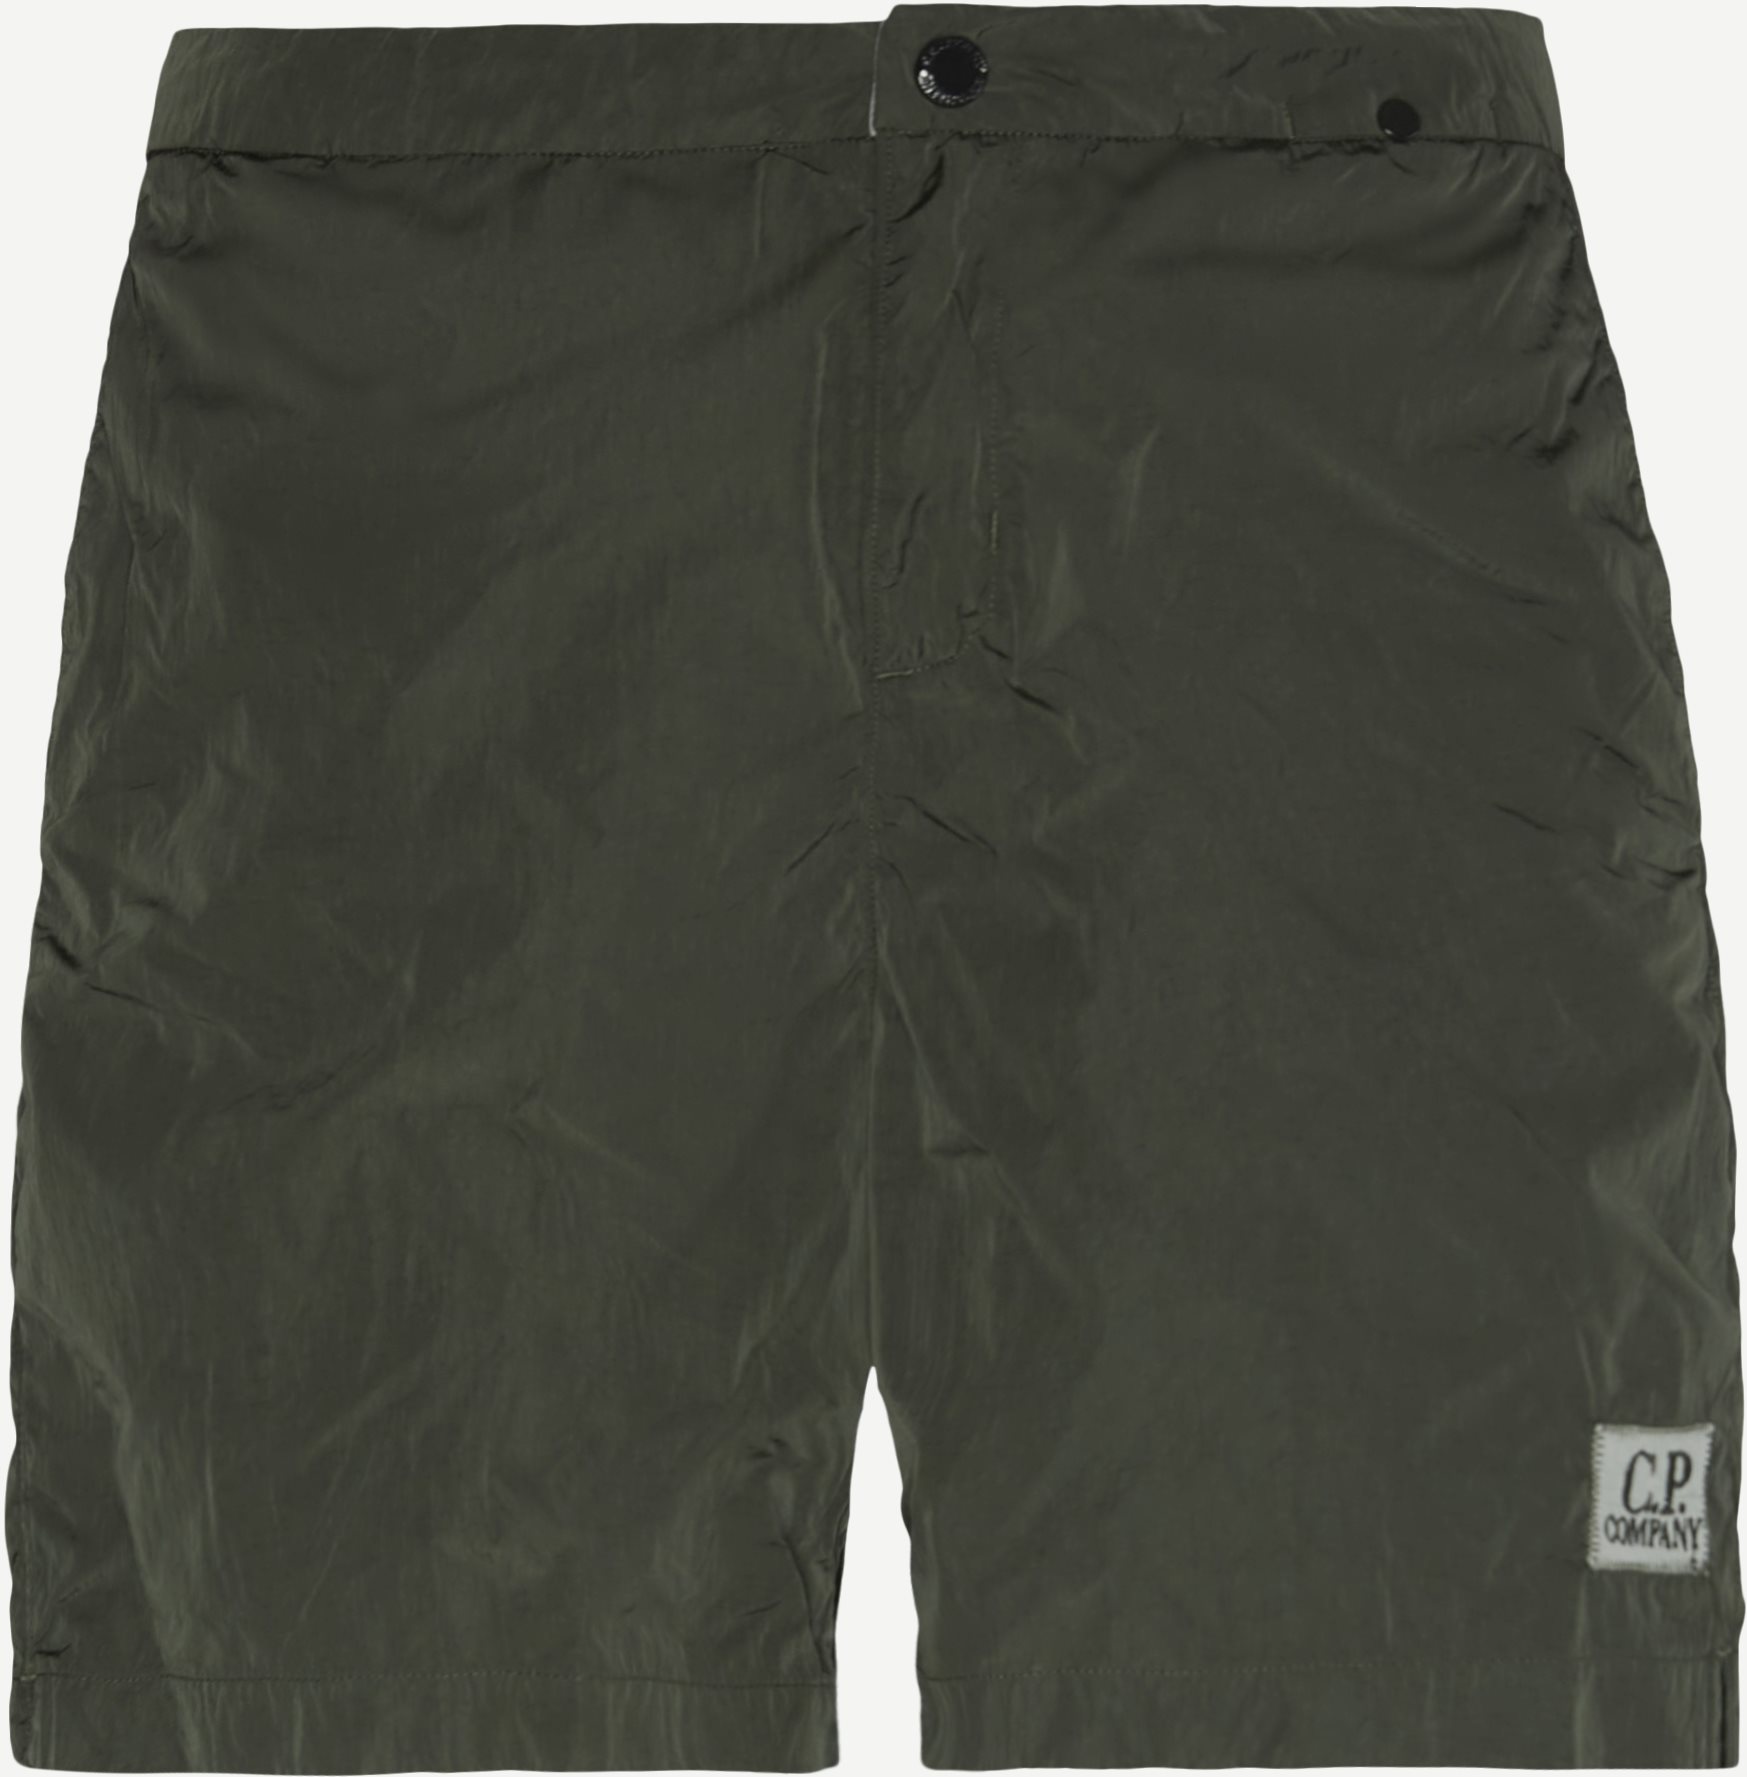 Badeshorts - Shorts - Regular fit - Army